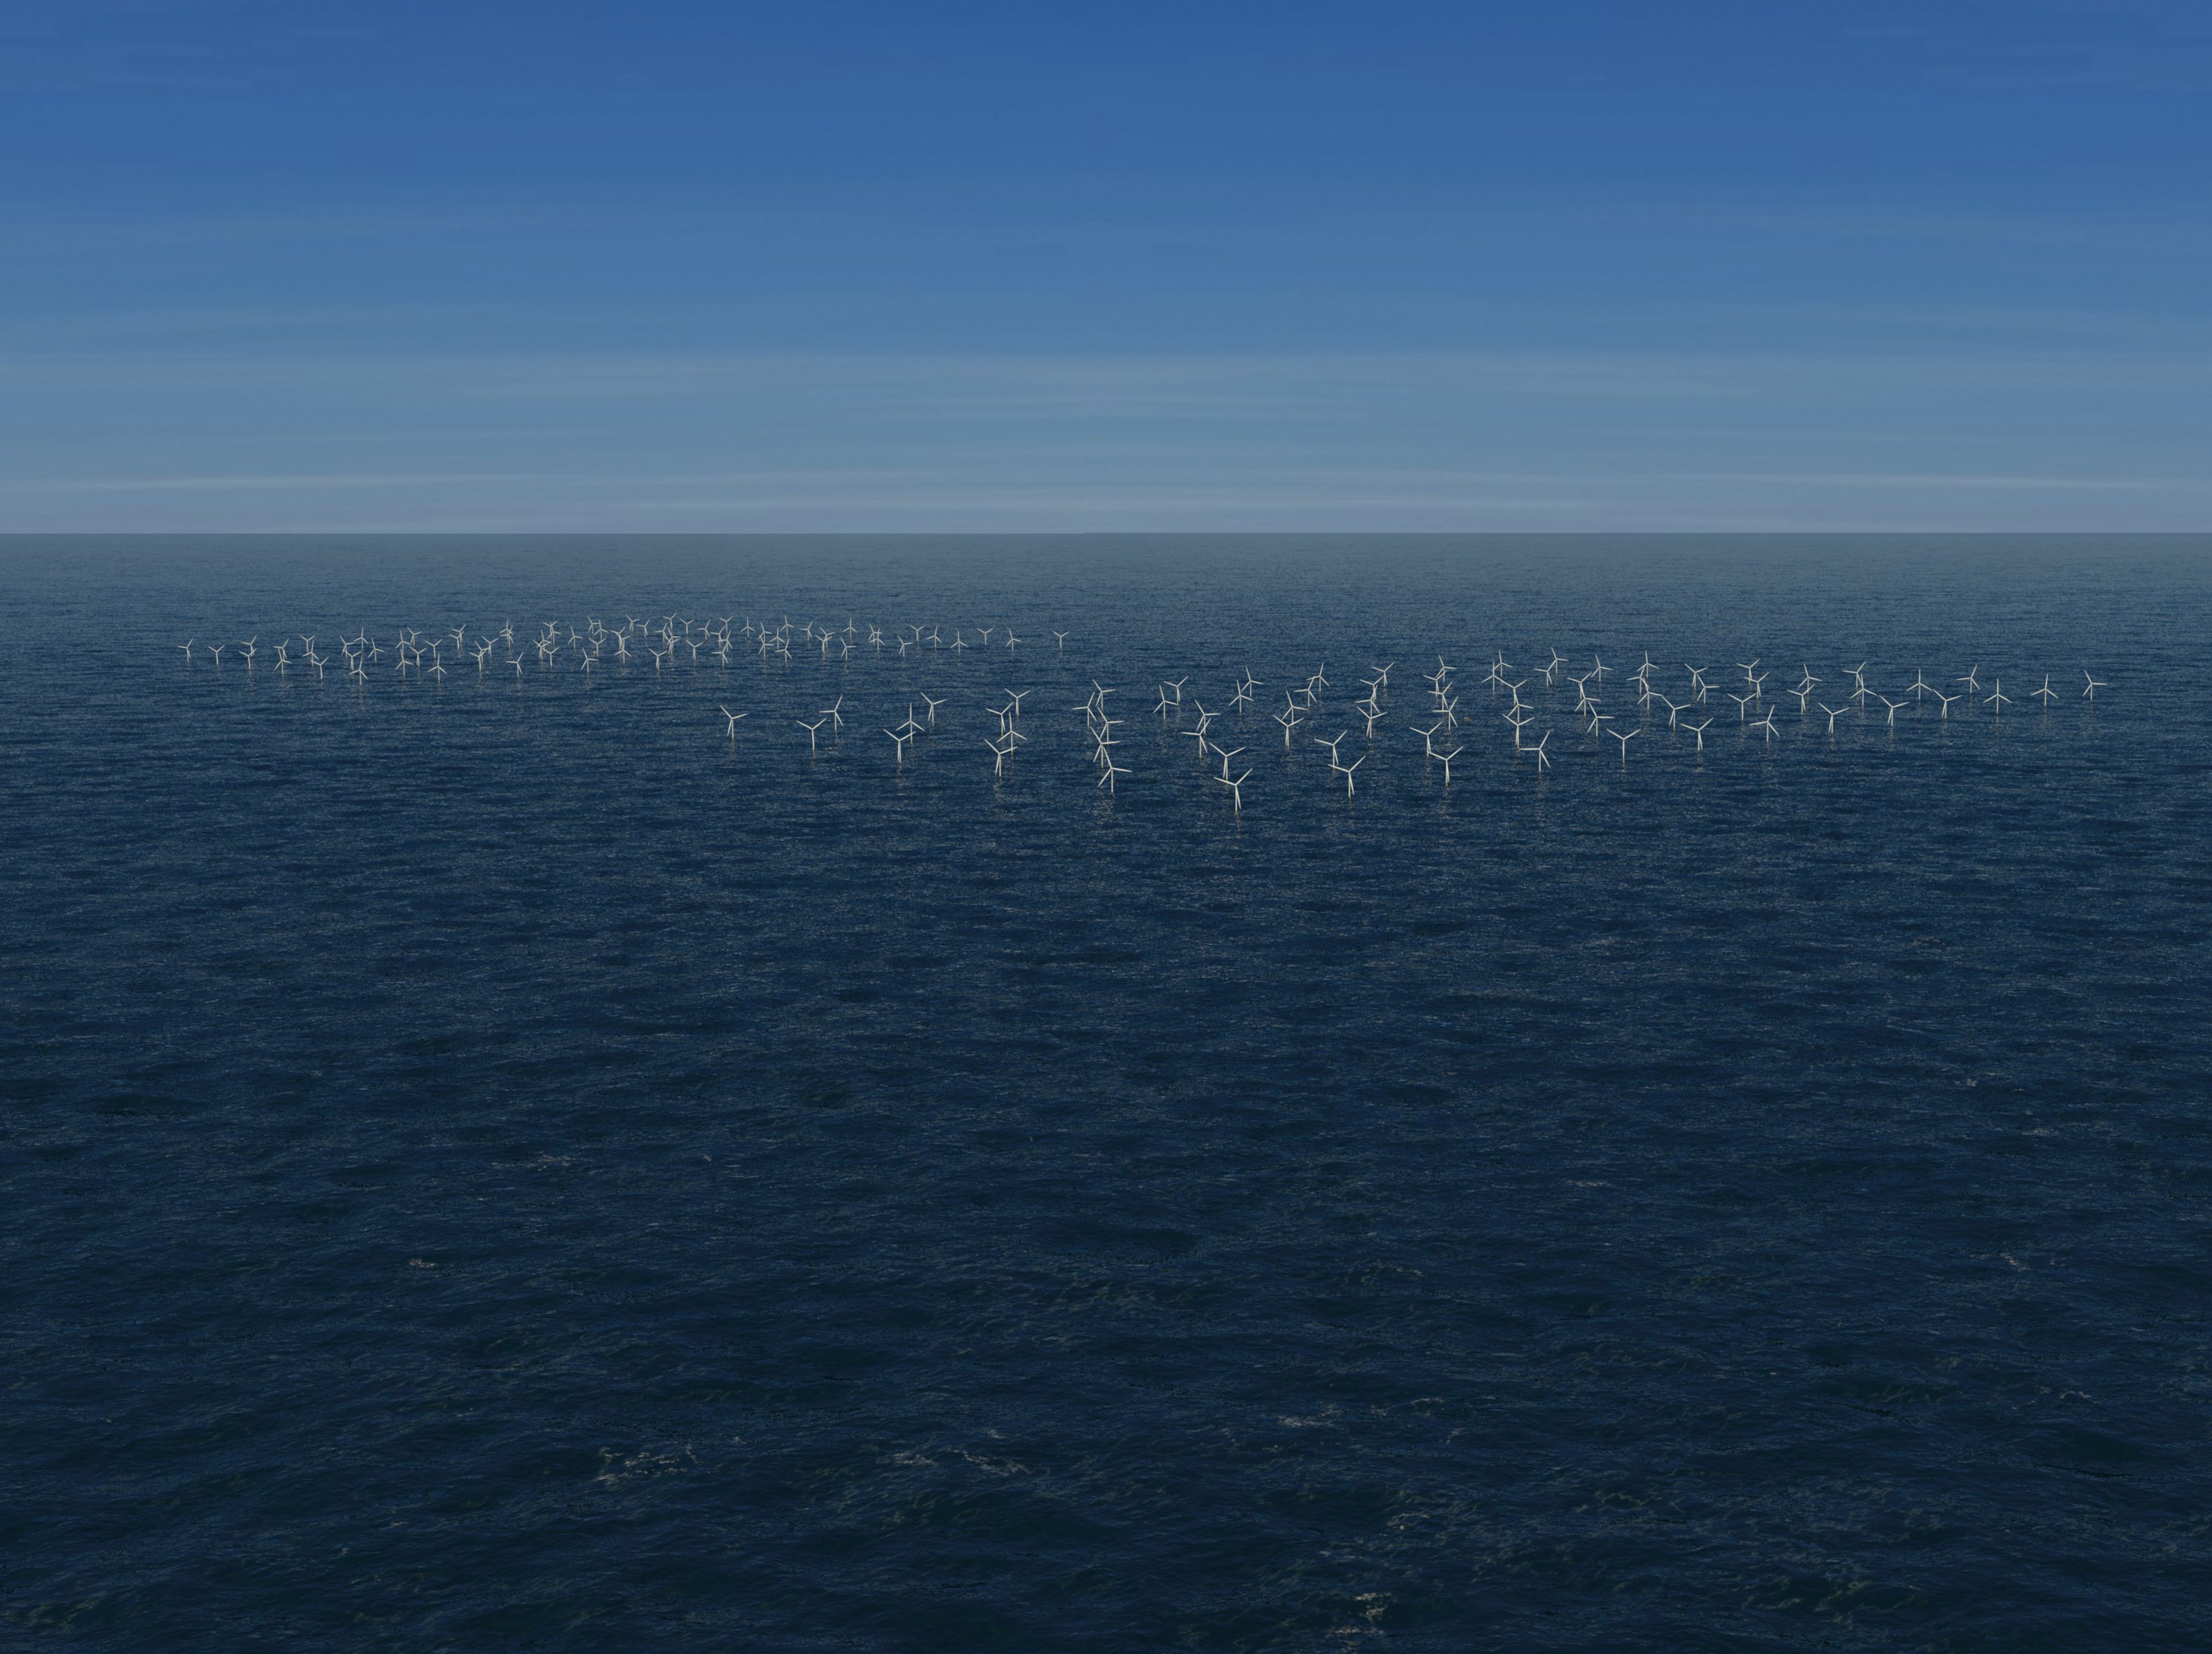 Inaugurado o segundo maior parque eólico mariño do mundo en Holanda | A Vaquiña polo que Vale